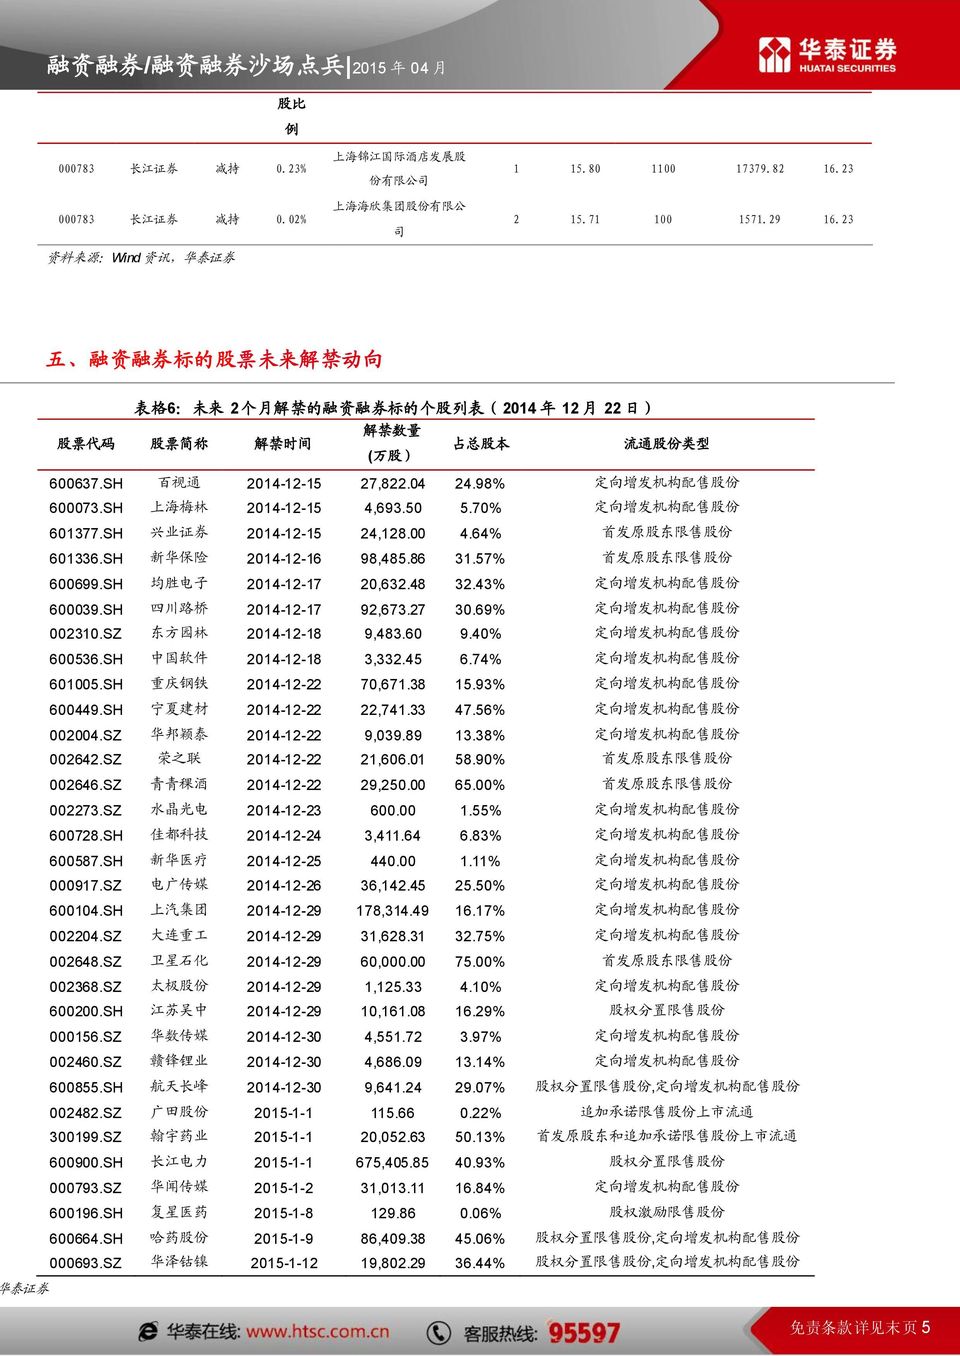 98% 定 向 增 发 机 构 配 售 股 份 600073.SH 上 海 梅 林 2014-12-15 4,693.50 5.70% 定 向 增 发 机 构 配 售 股 份 601377.SH 兴 业 证 券 2014-12-15 24,128.00 4.64% 首 发 原 股 东 限 售 股 份 601336.SH 新 华 保 险 2014-12-16 98,485.86 31.